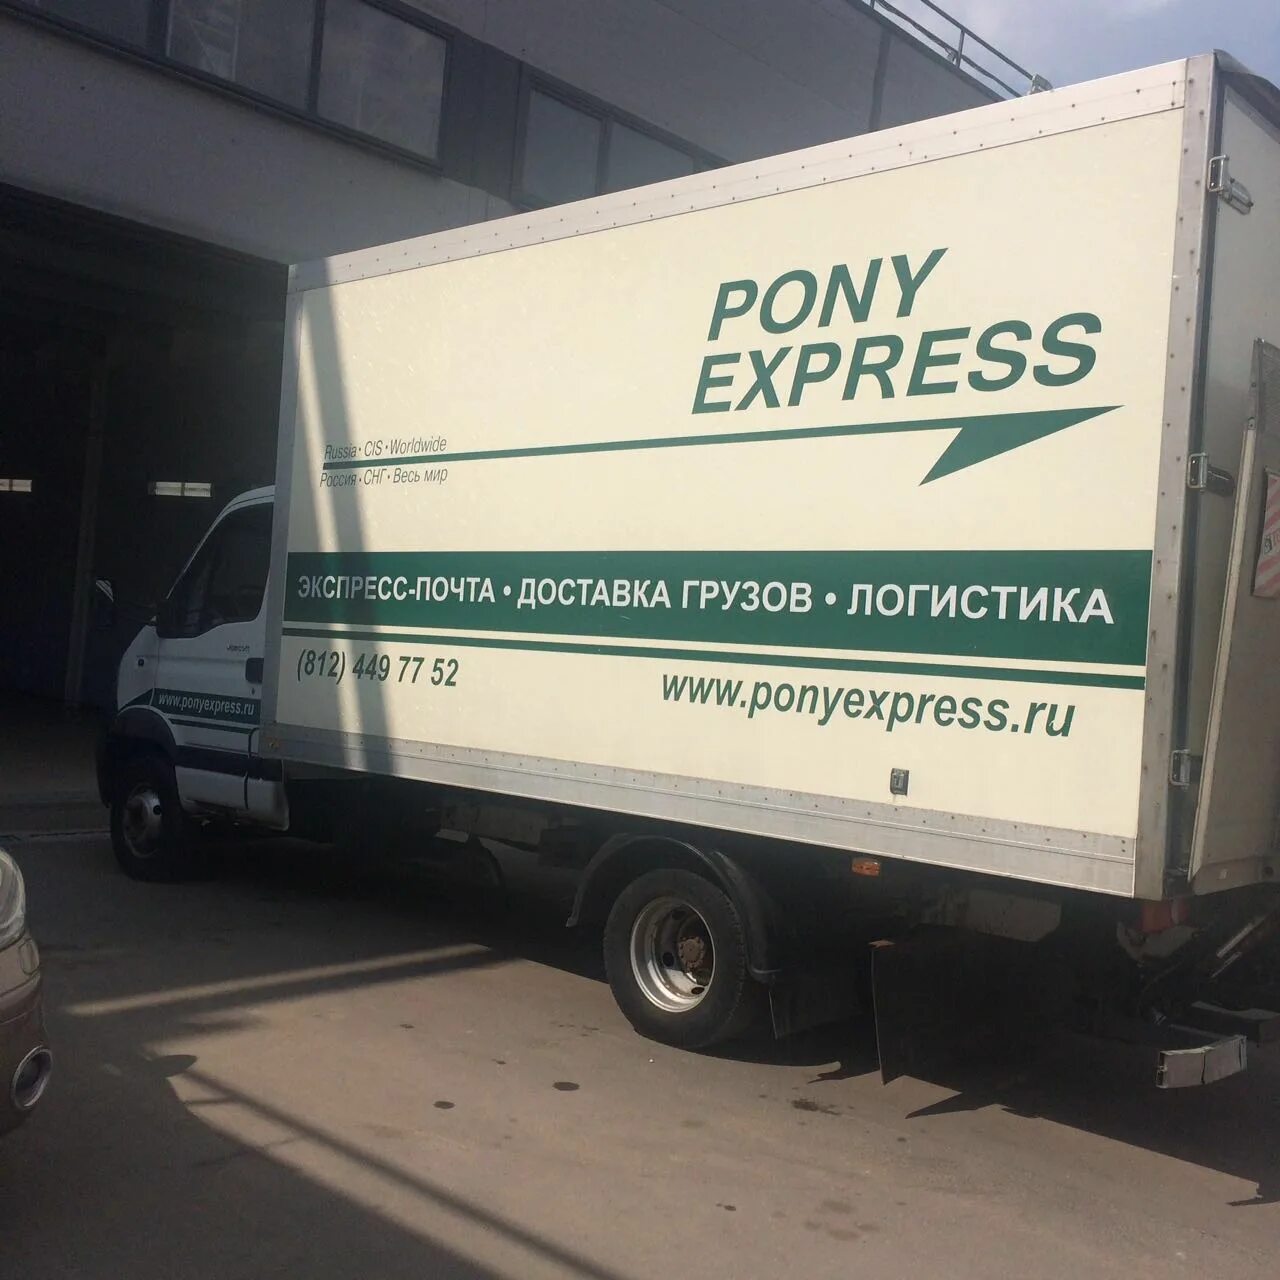 Доставка pony. Пони экспресс. Машины пони экспресс. Pony Express логотип. Курьерская служба пони экспресс.